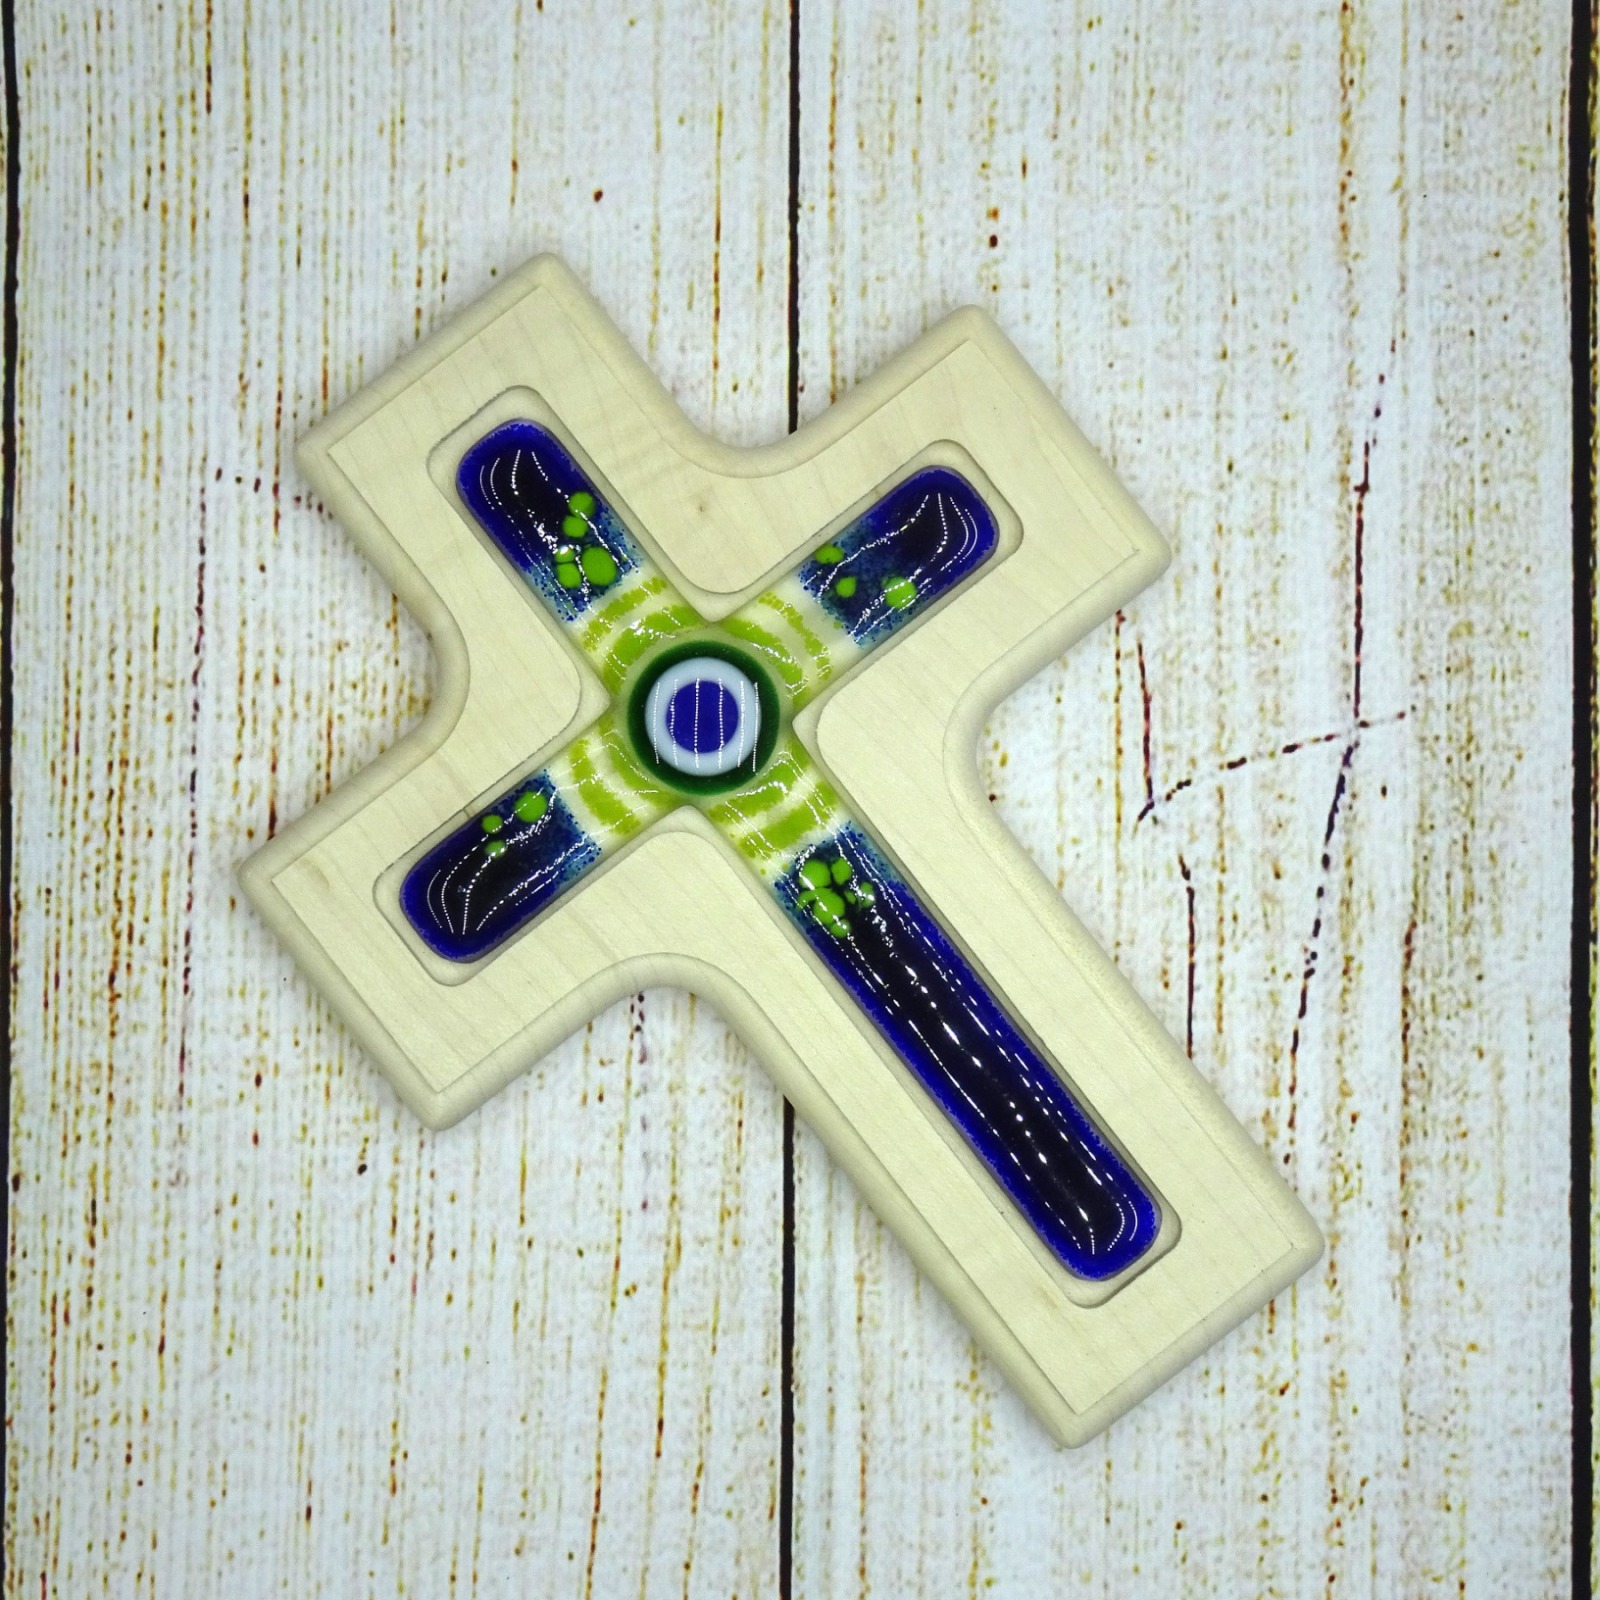 Holzkreuz mit Fusingglas in blau und grün, Kreuz aus Ahorn 2